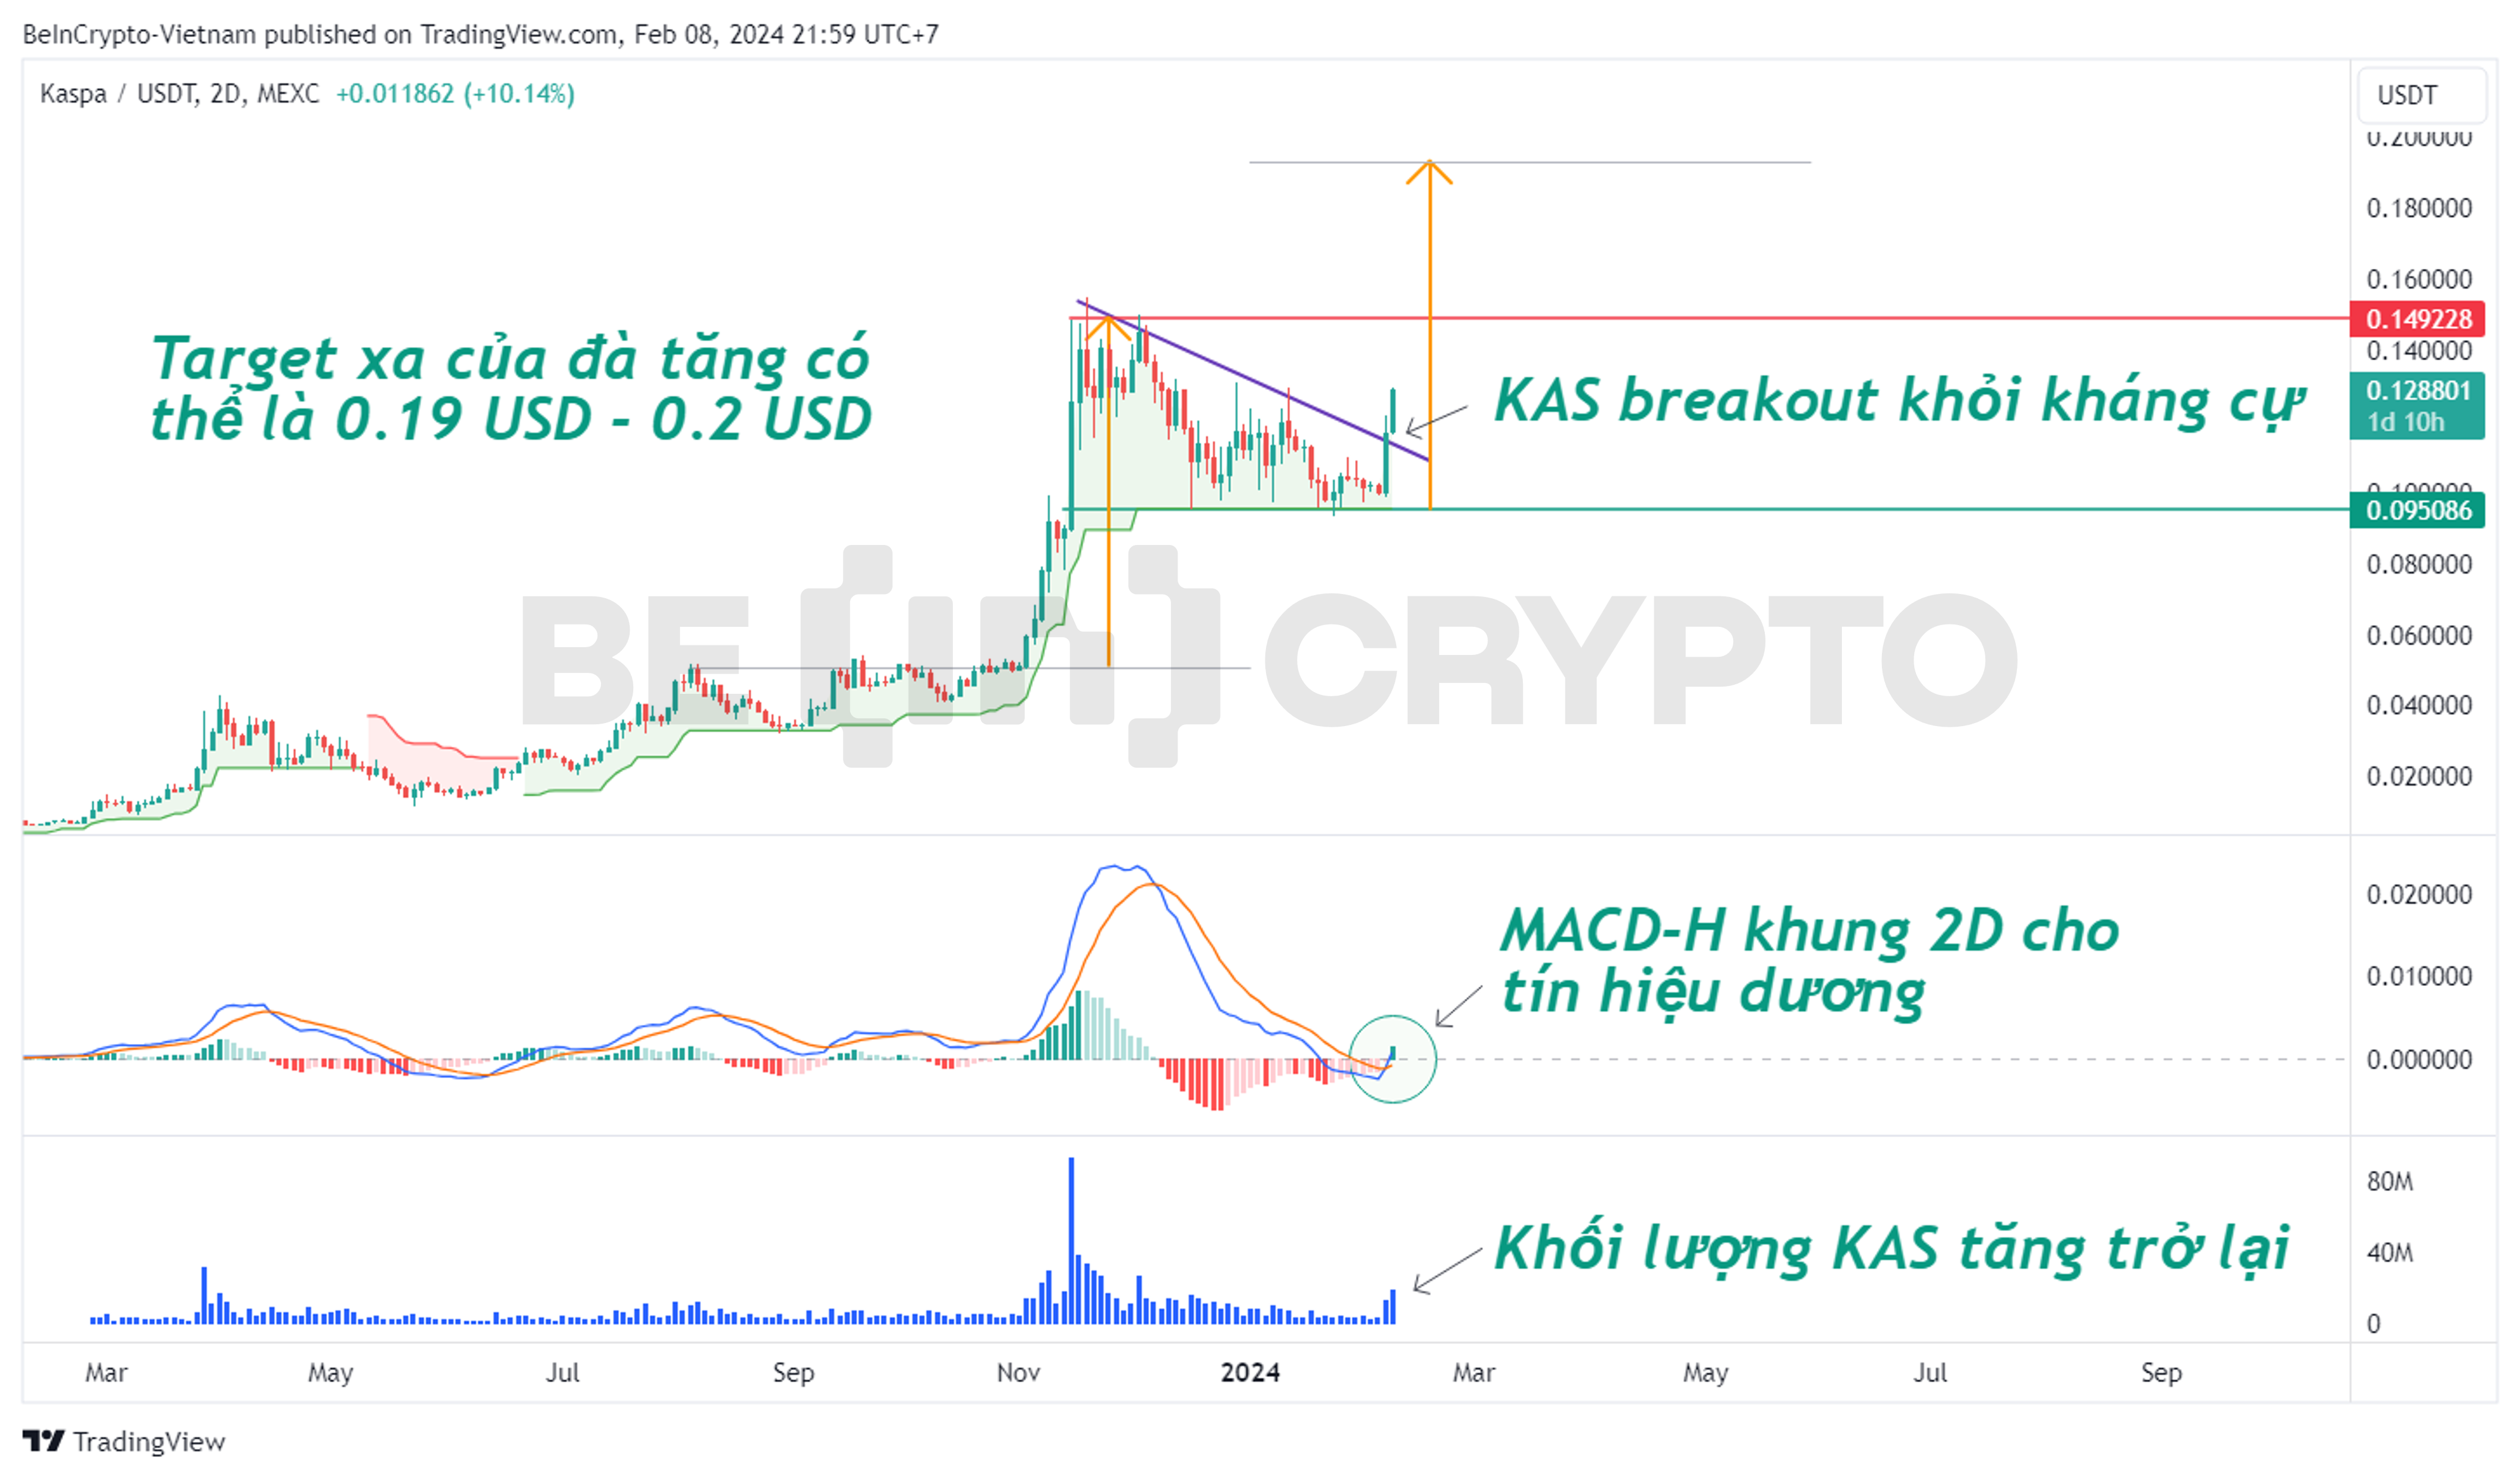 Cập nhật phân tích giá KAS khung 2 ngày với MACD-H và Super Trend.